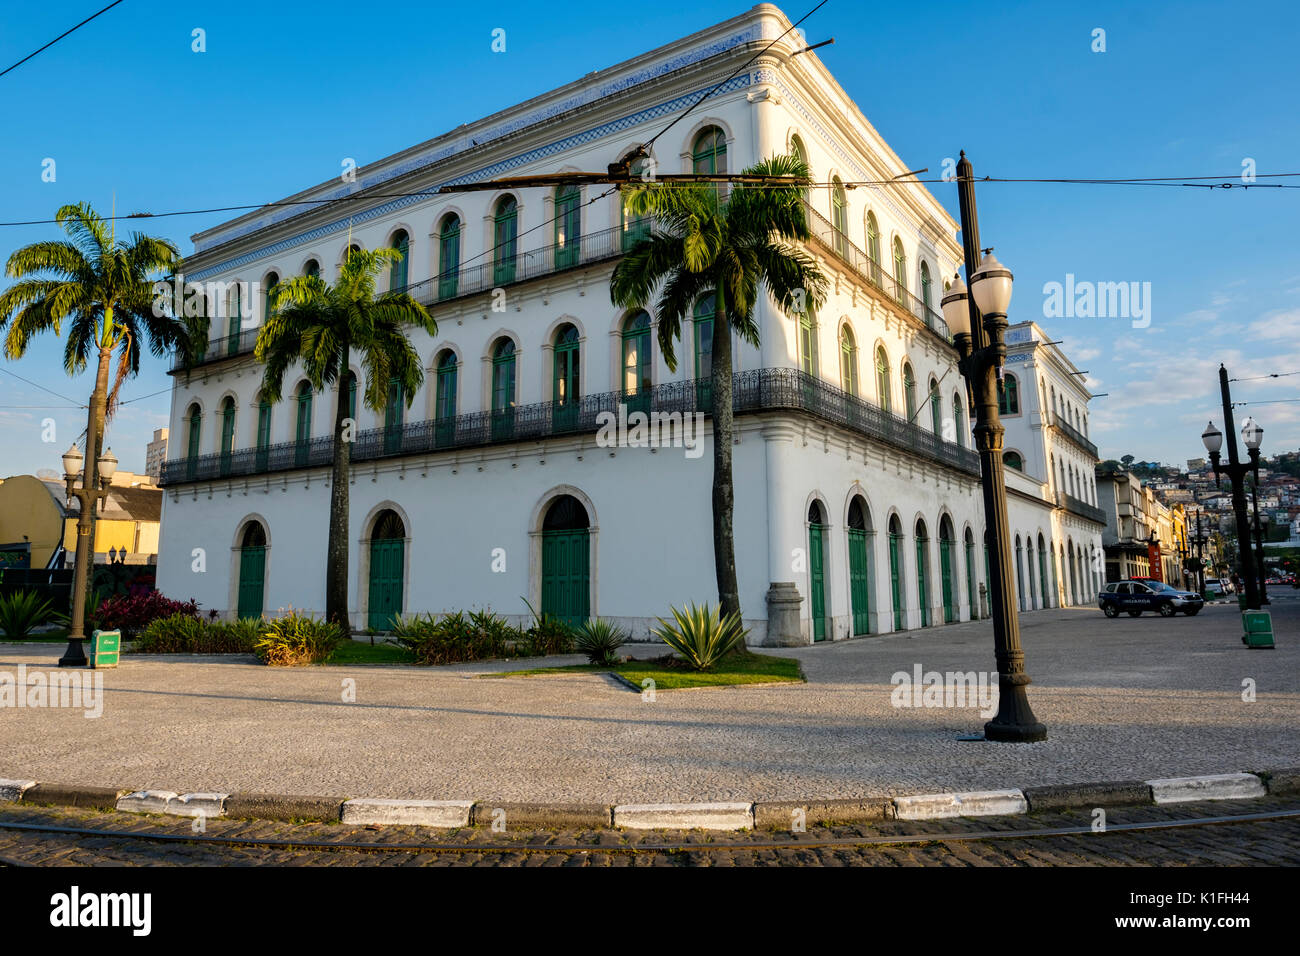 Façade de l'hôtel Maia Mansions au crépuscule, des bâtiments historiques, la production de café du Brésil période d'or, qui abrite maintenant le Musée de Pelé, Santos, au Brésil. Banque D'Images